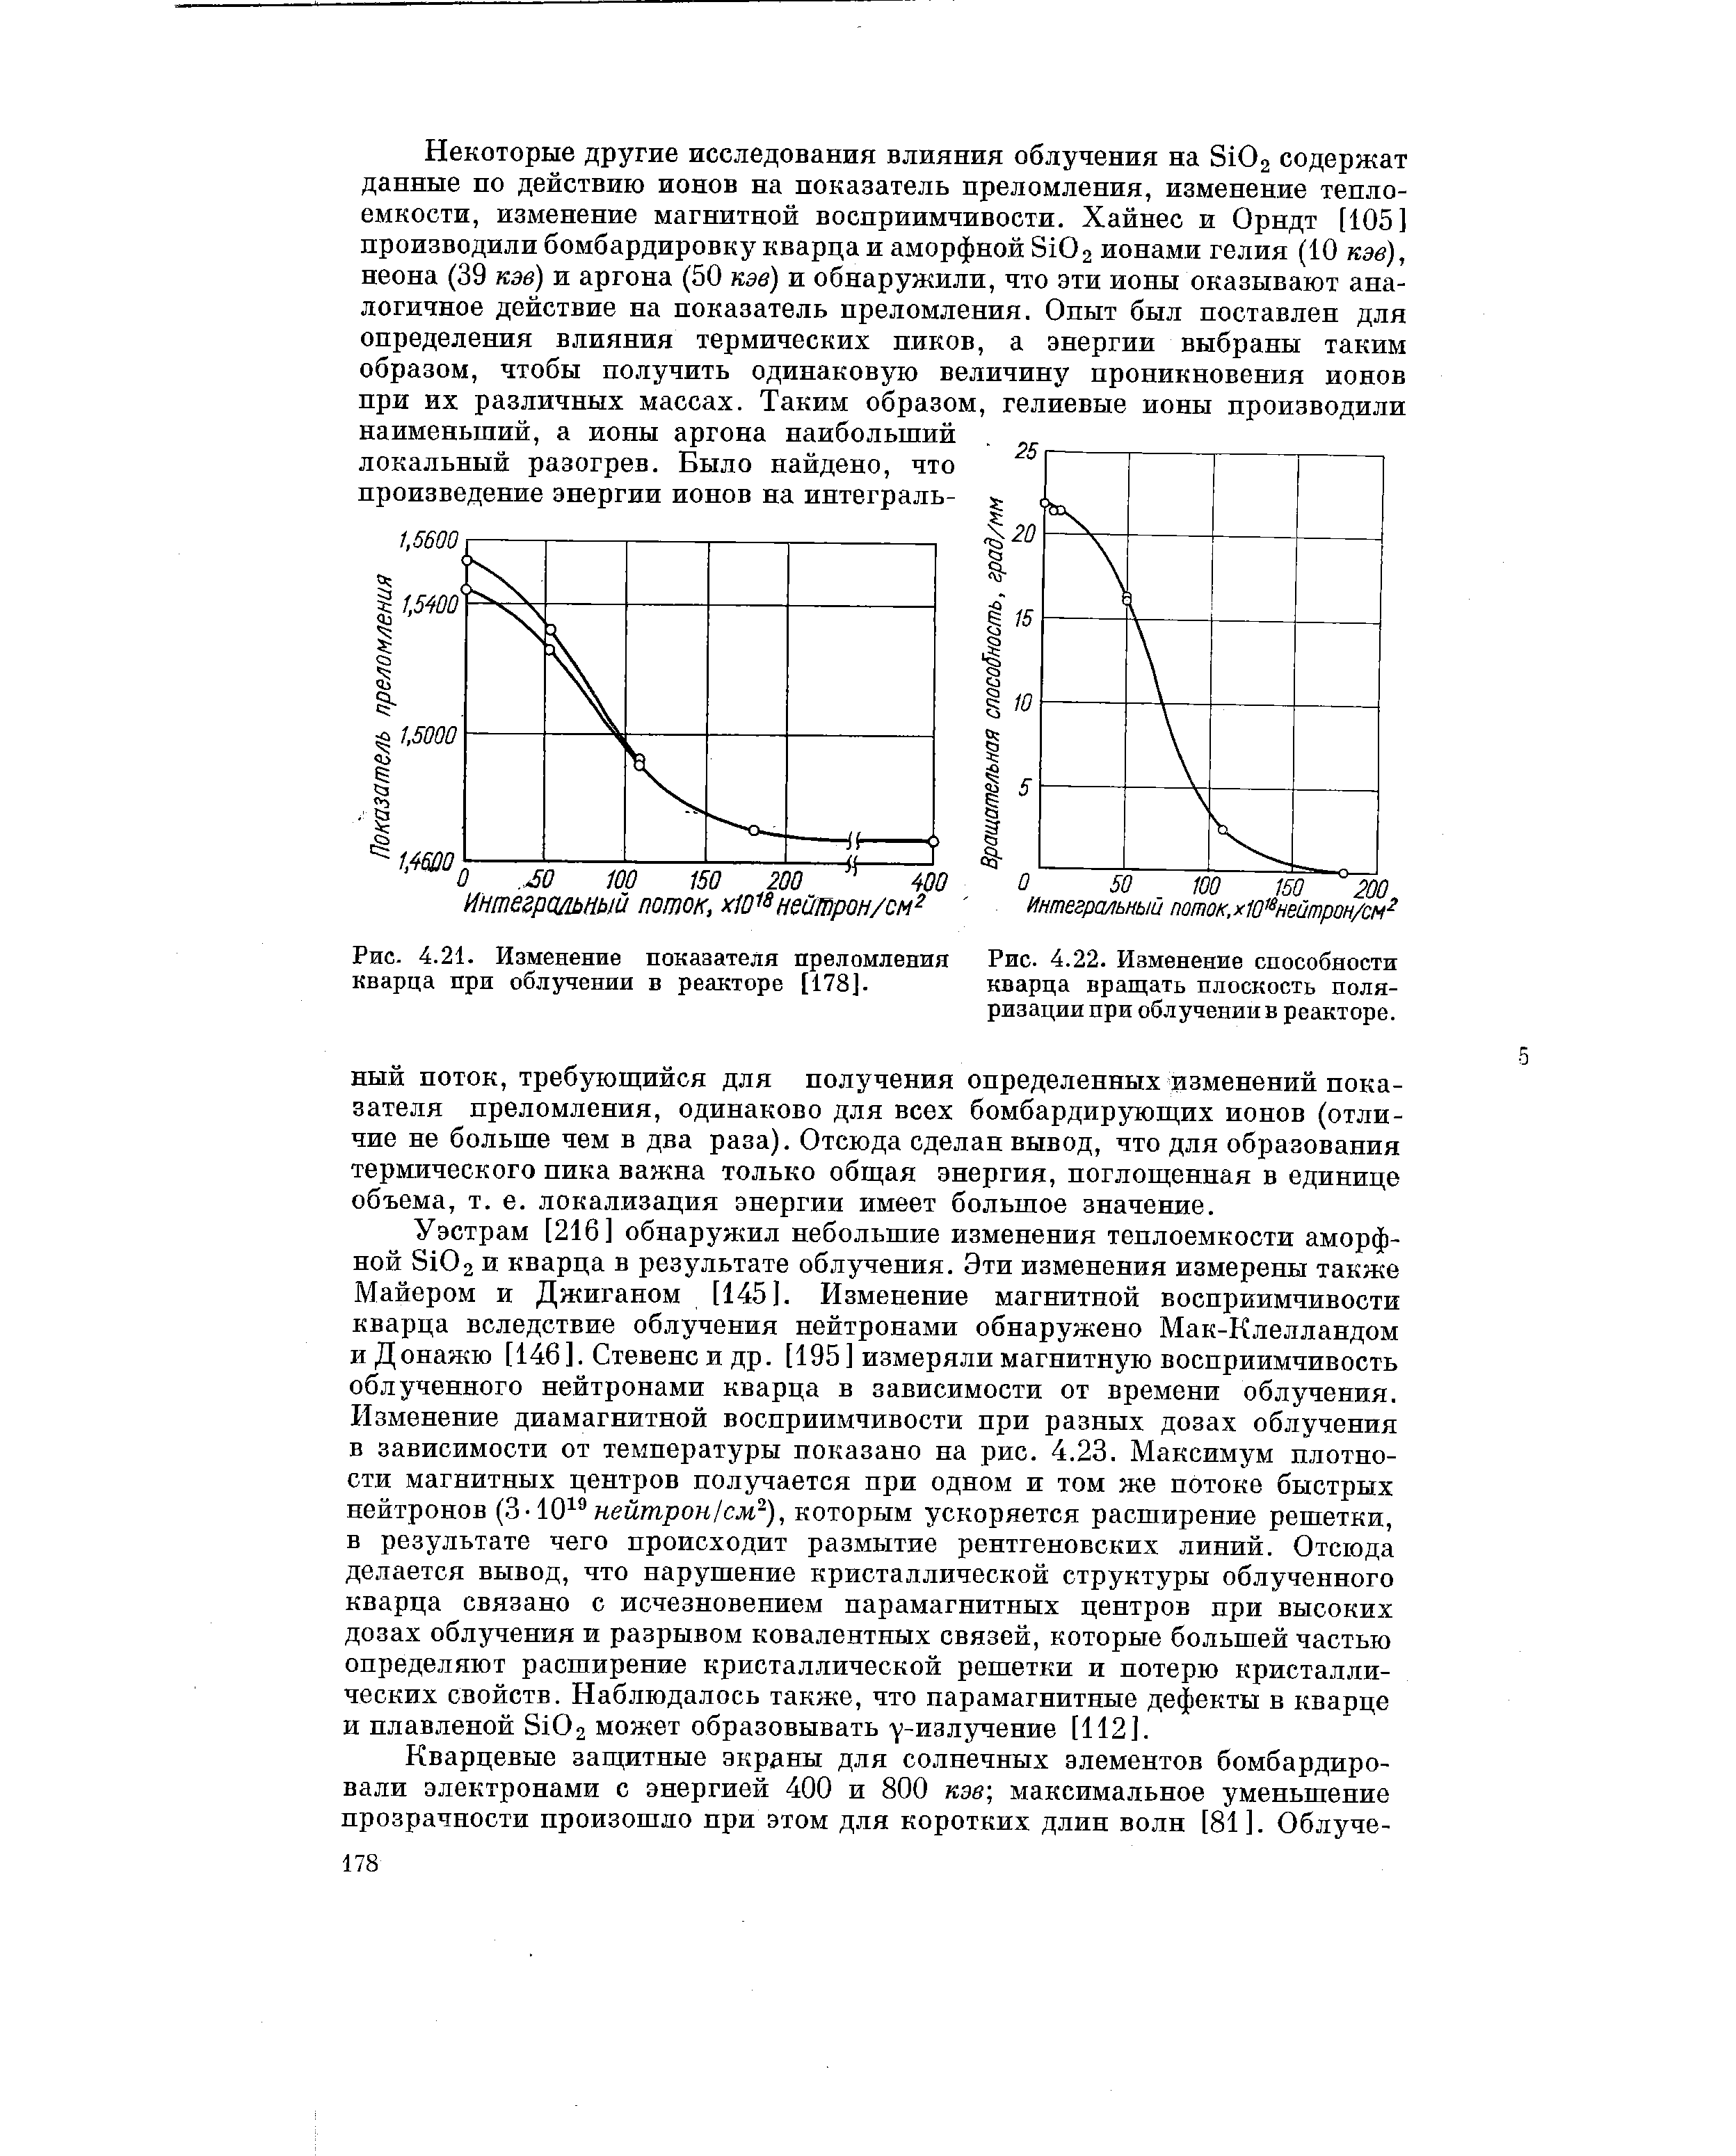 Рис. 4.21. Изменение показателя преломления кварца при облучении в реакторе [178].
